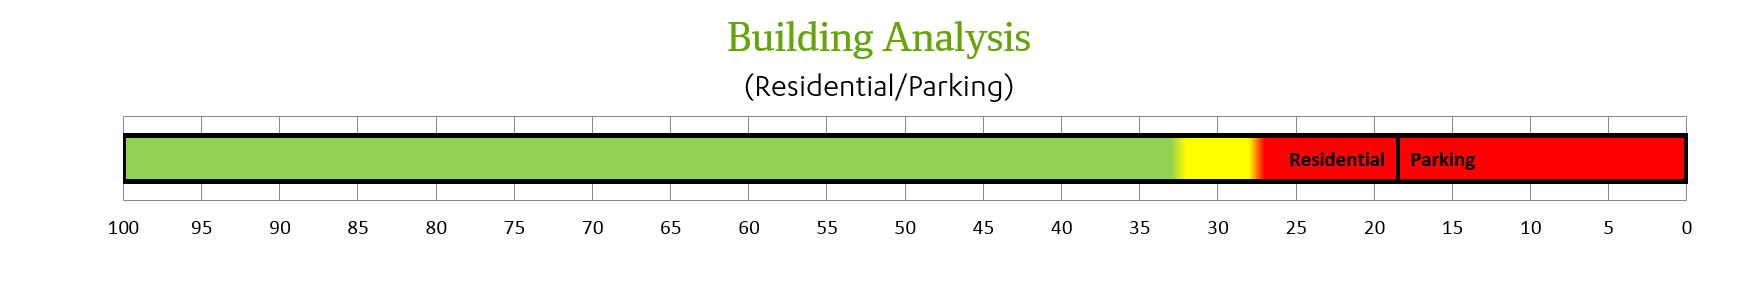 Building analysis